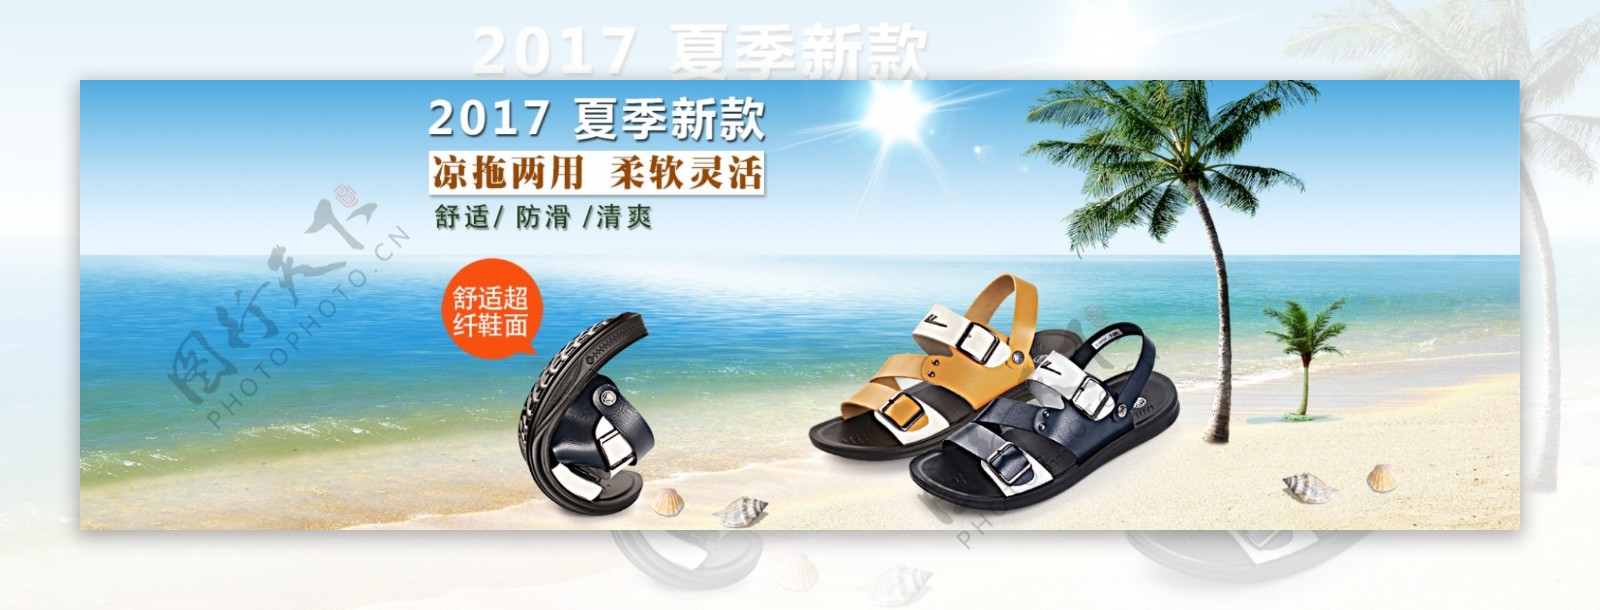 沙滩凉鞋海报李海平